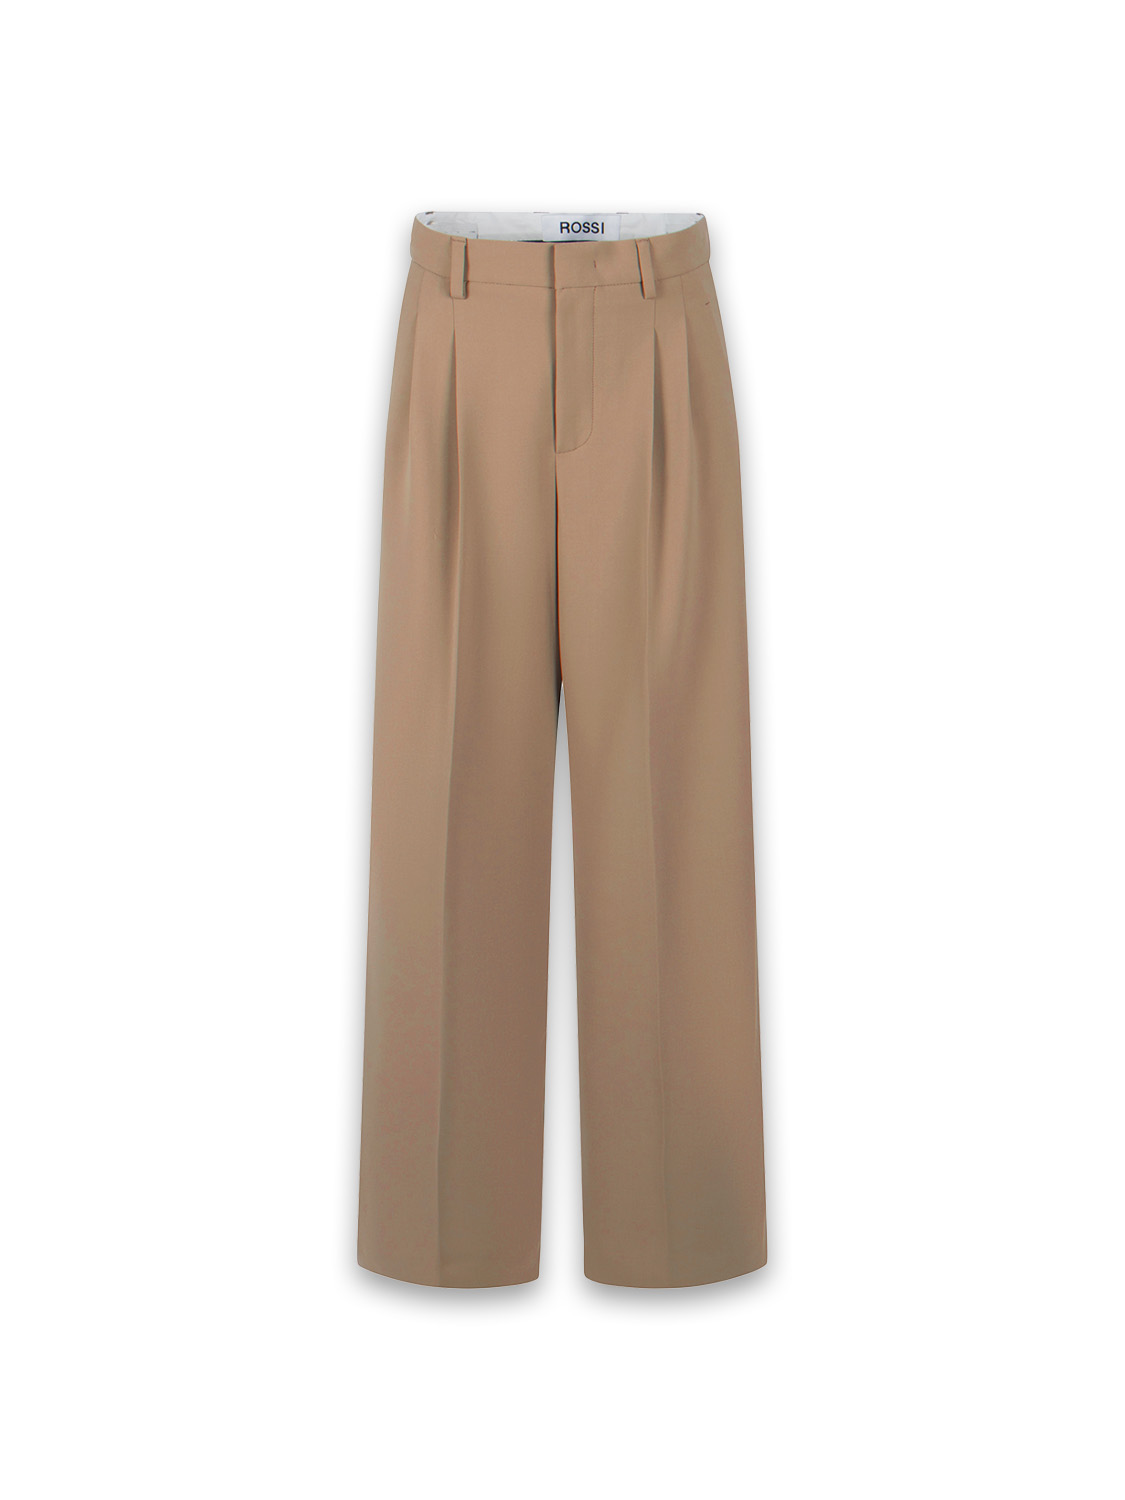 Rossi Noa Pantaloni plissettati in raso di cotone leggero Colore: cammello Taglia: L beige L